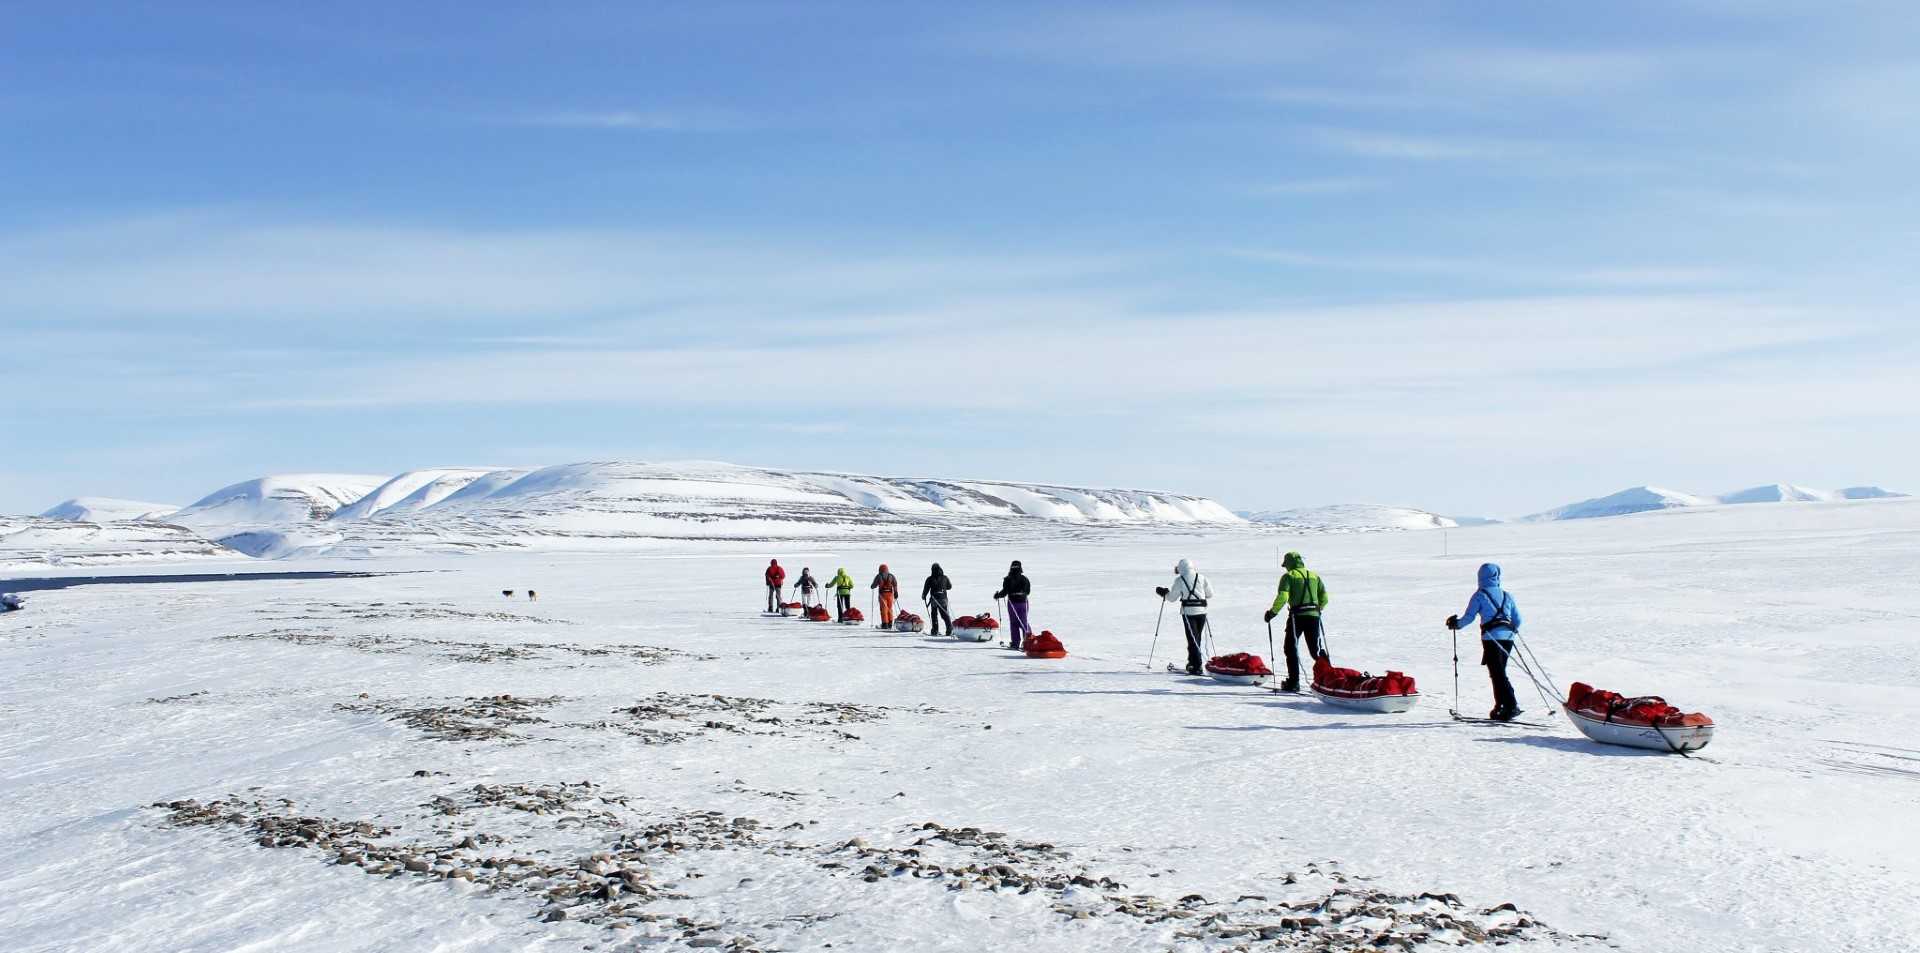 Raid on skis in Spitsbergen